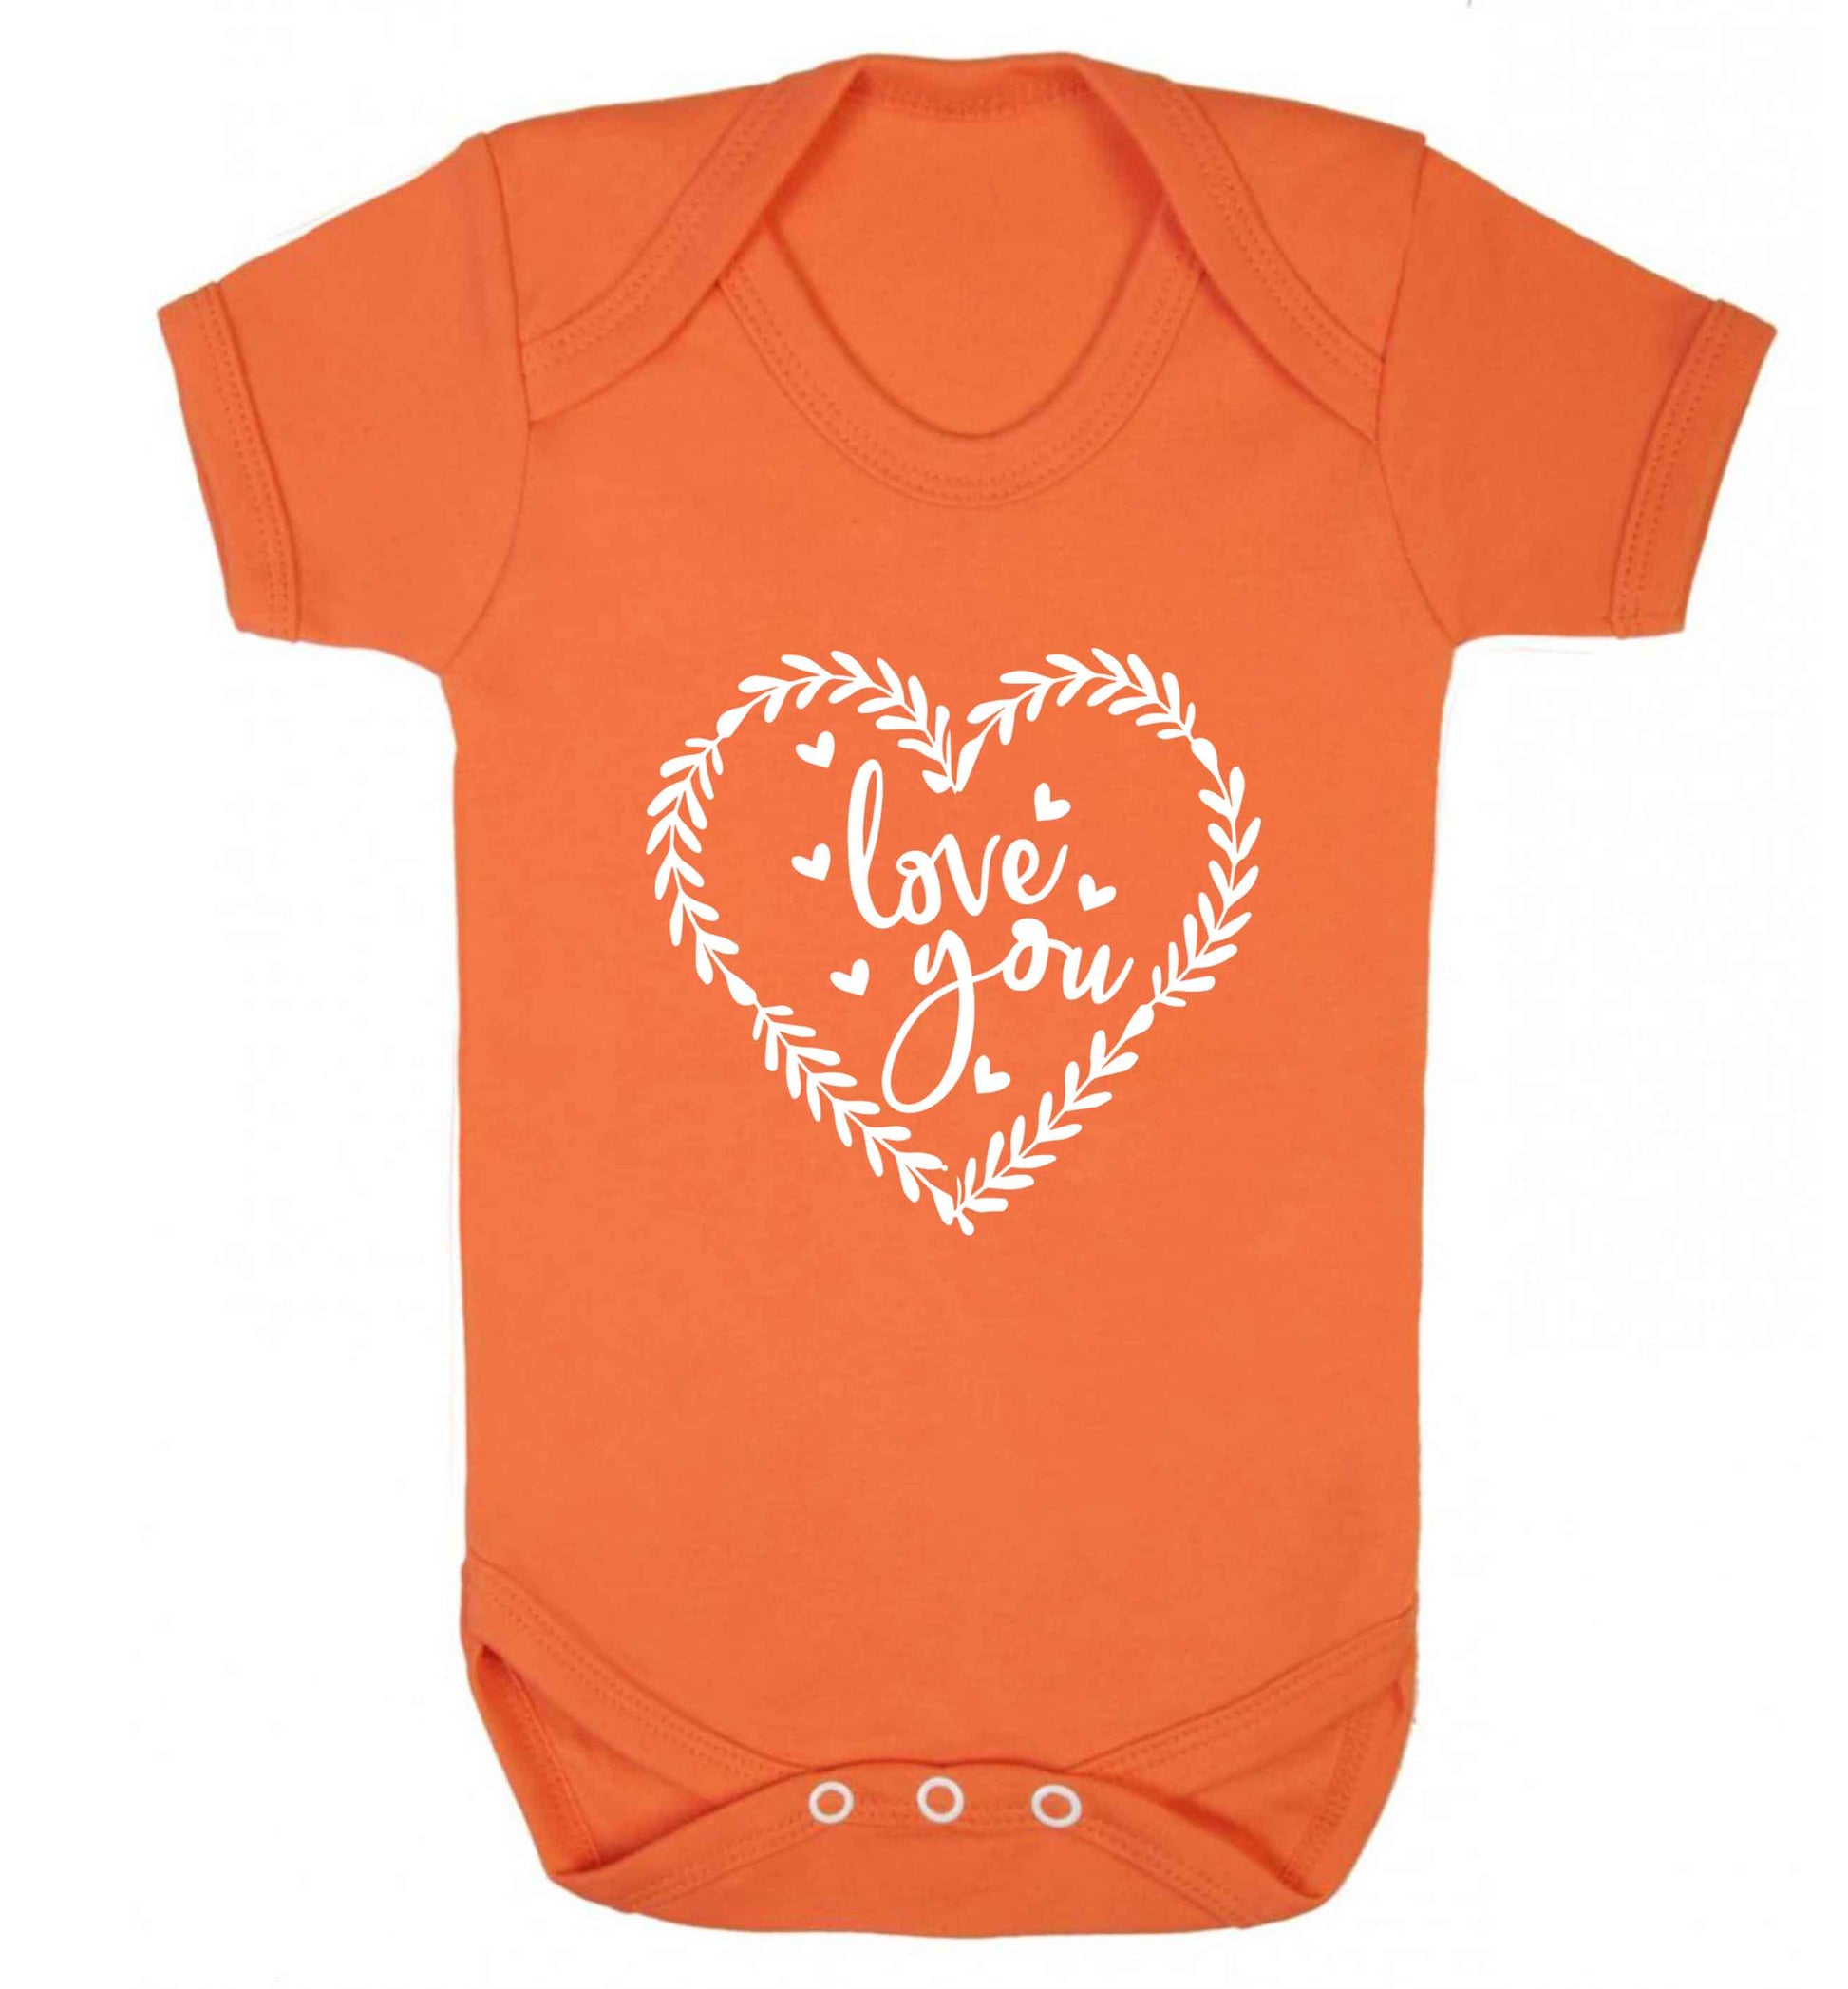 Love you baby vest orange 18-24 months